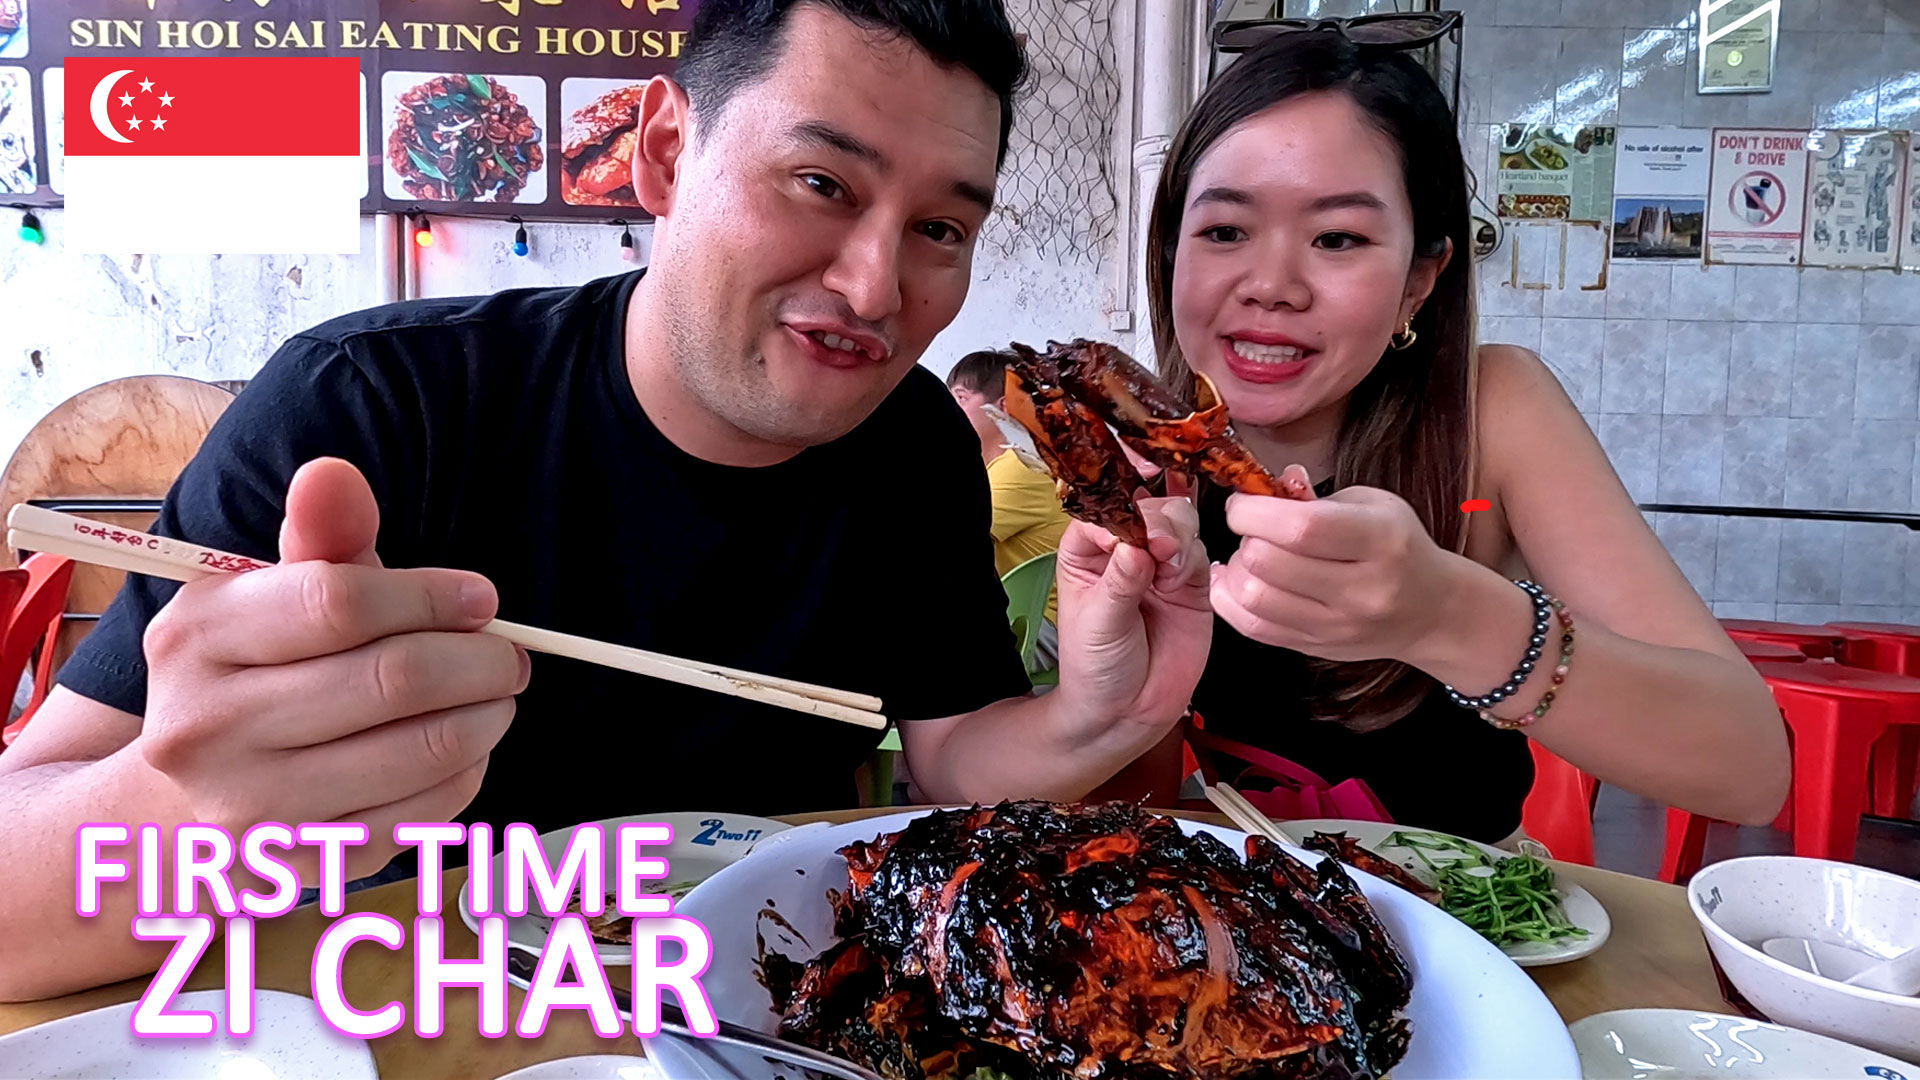 Singapore’s Black Pepper Crab & Local Zichar Cuisine